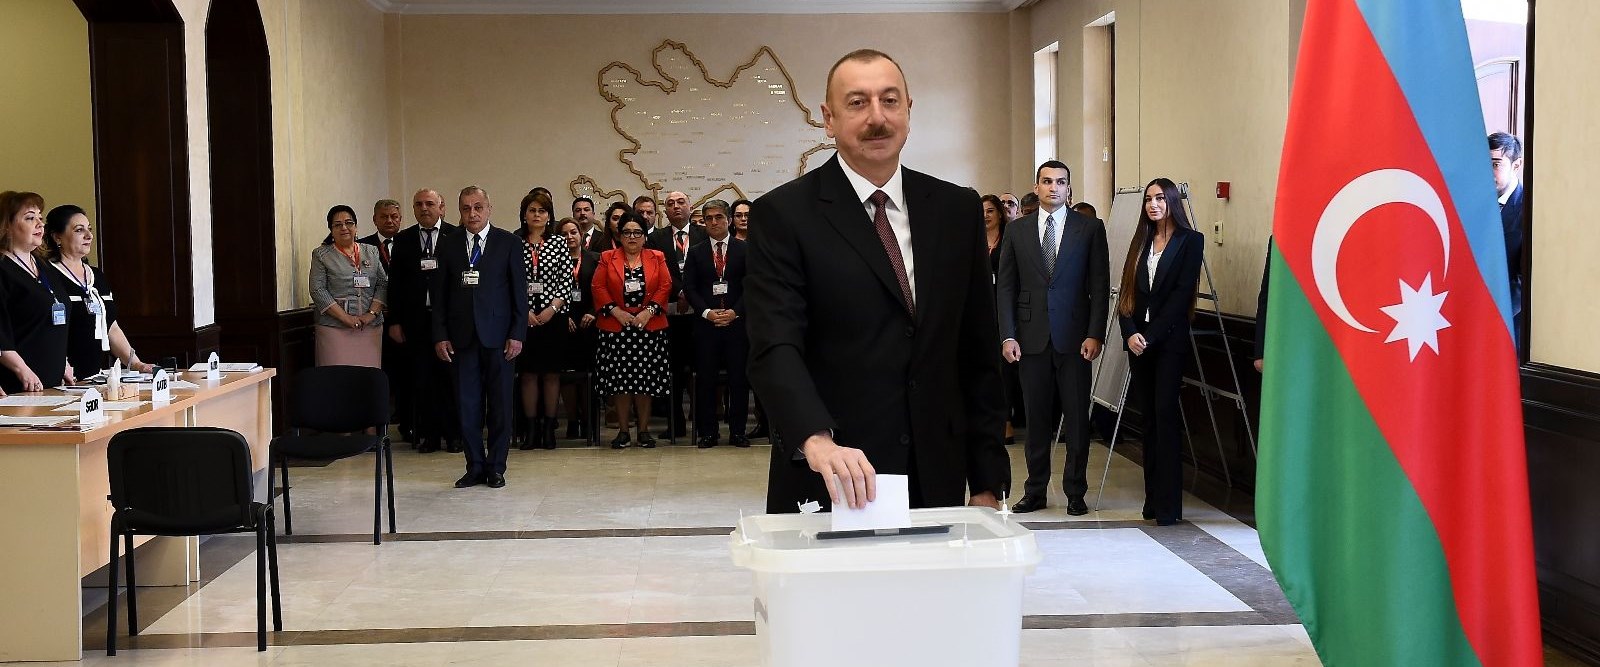 Aliyev yeniden cumhurbaşkanı